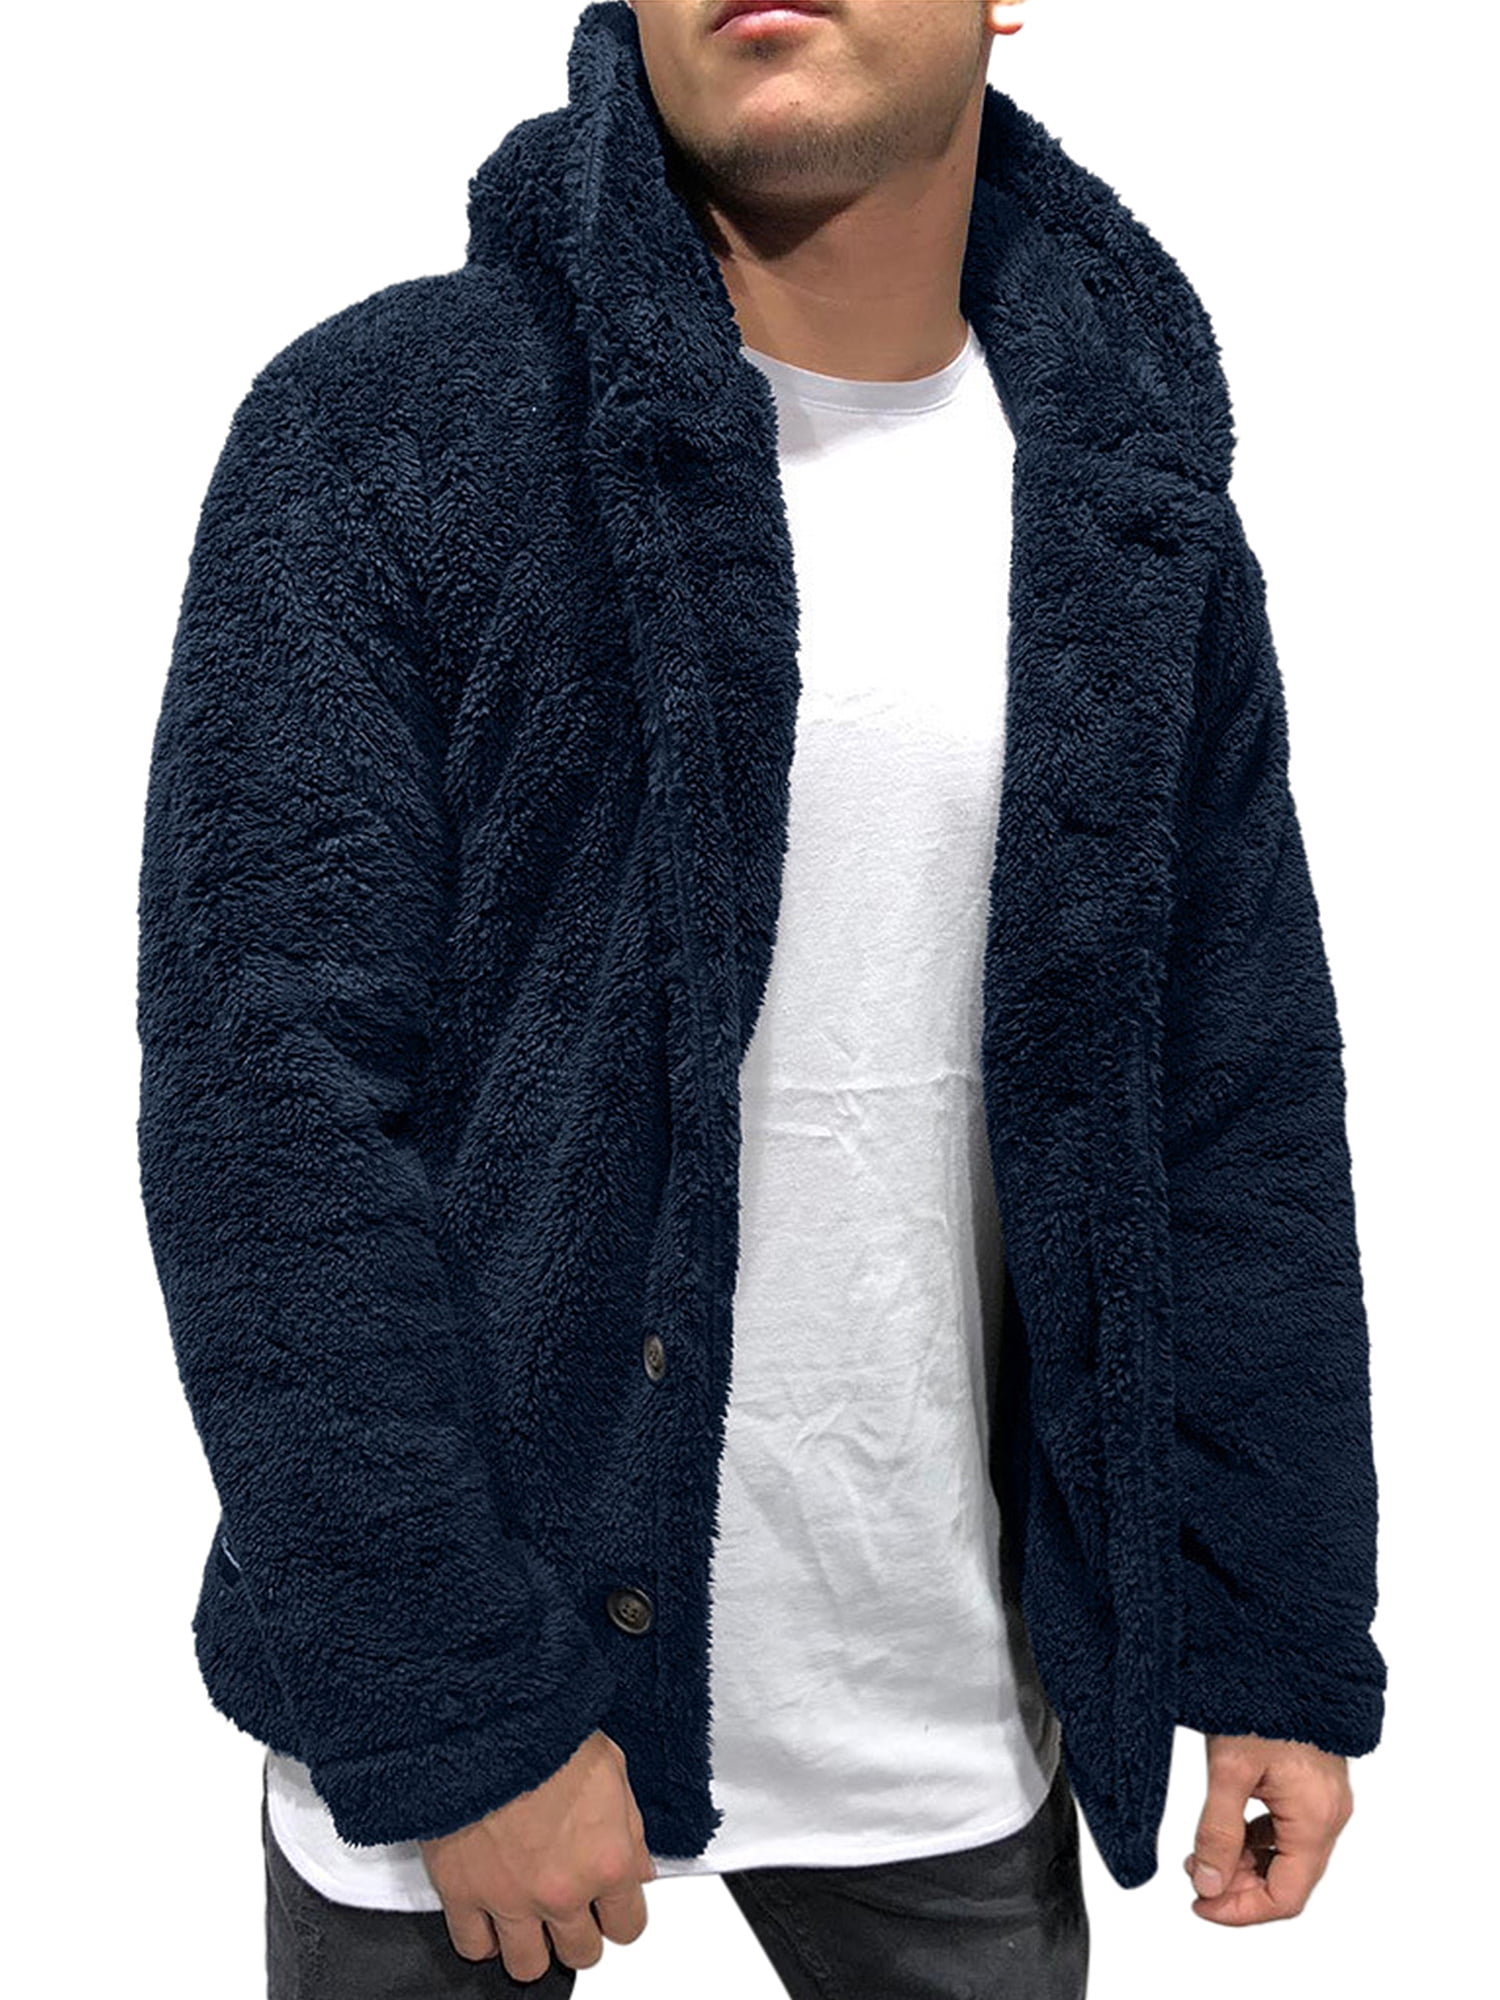 Men Fashion Long Sleeve Jacket Hooded Coat Sweatshirt Cardigan Casual TopsJacket 